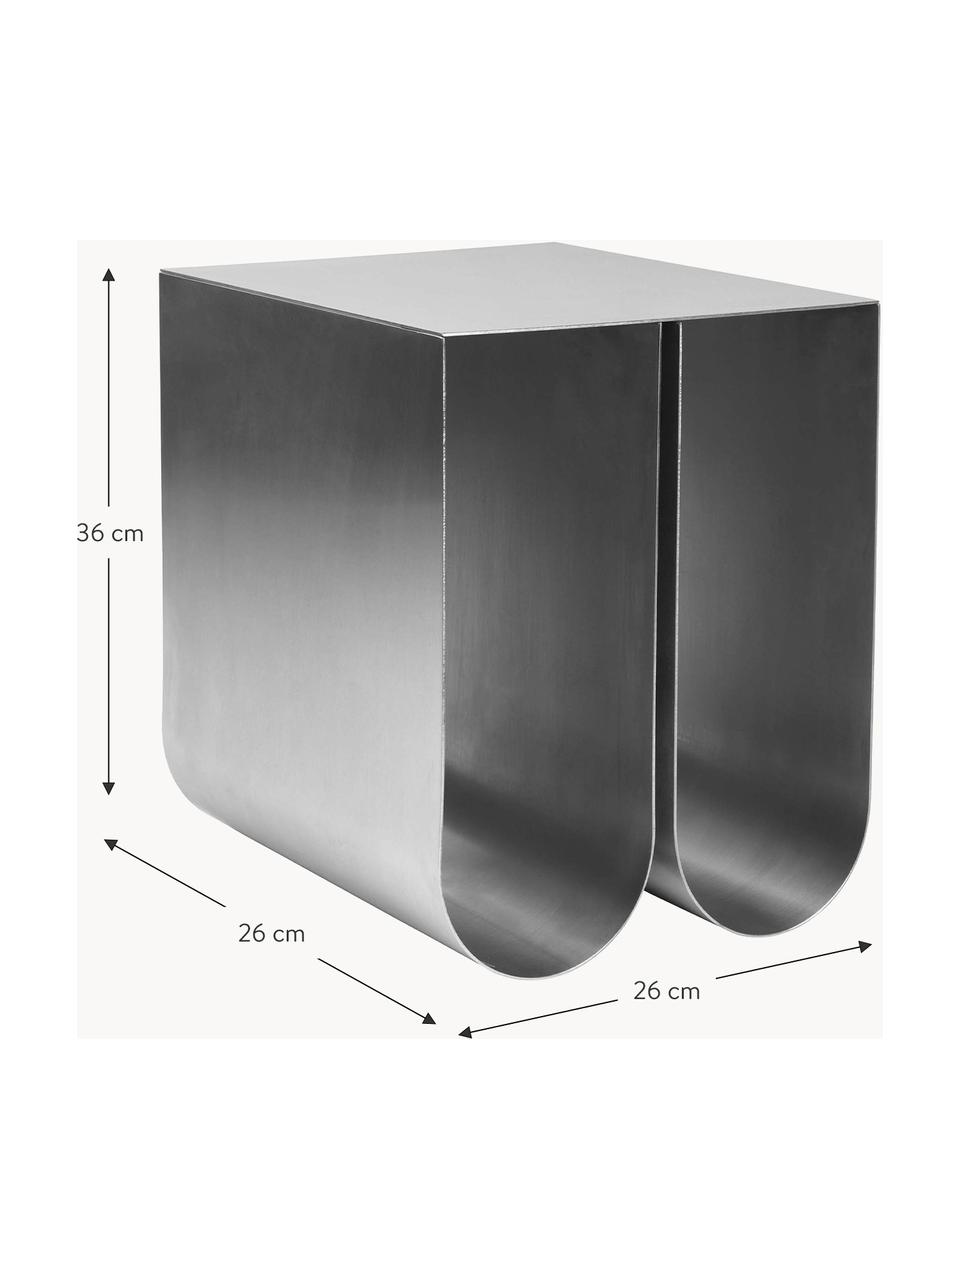 Metalen bijzettafel Curved, Edelstaal, Zilverkleurig, B 26 x H 36 cm